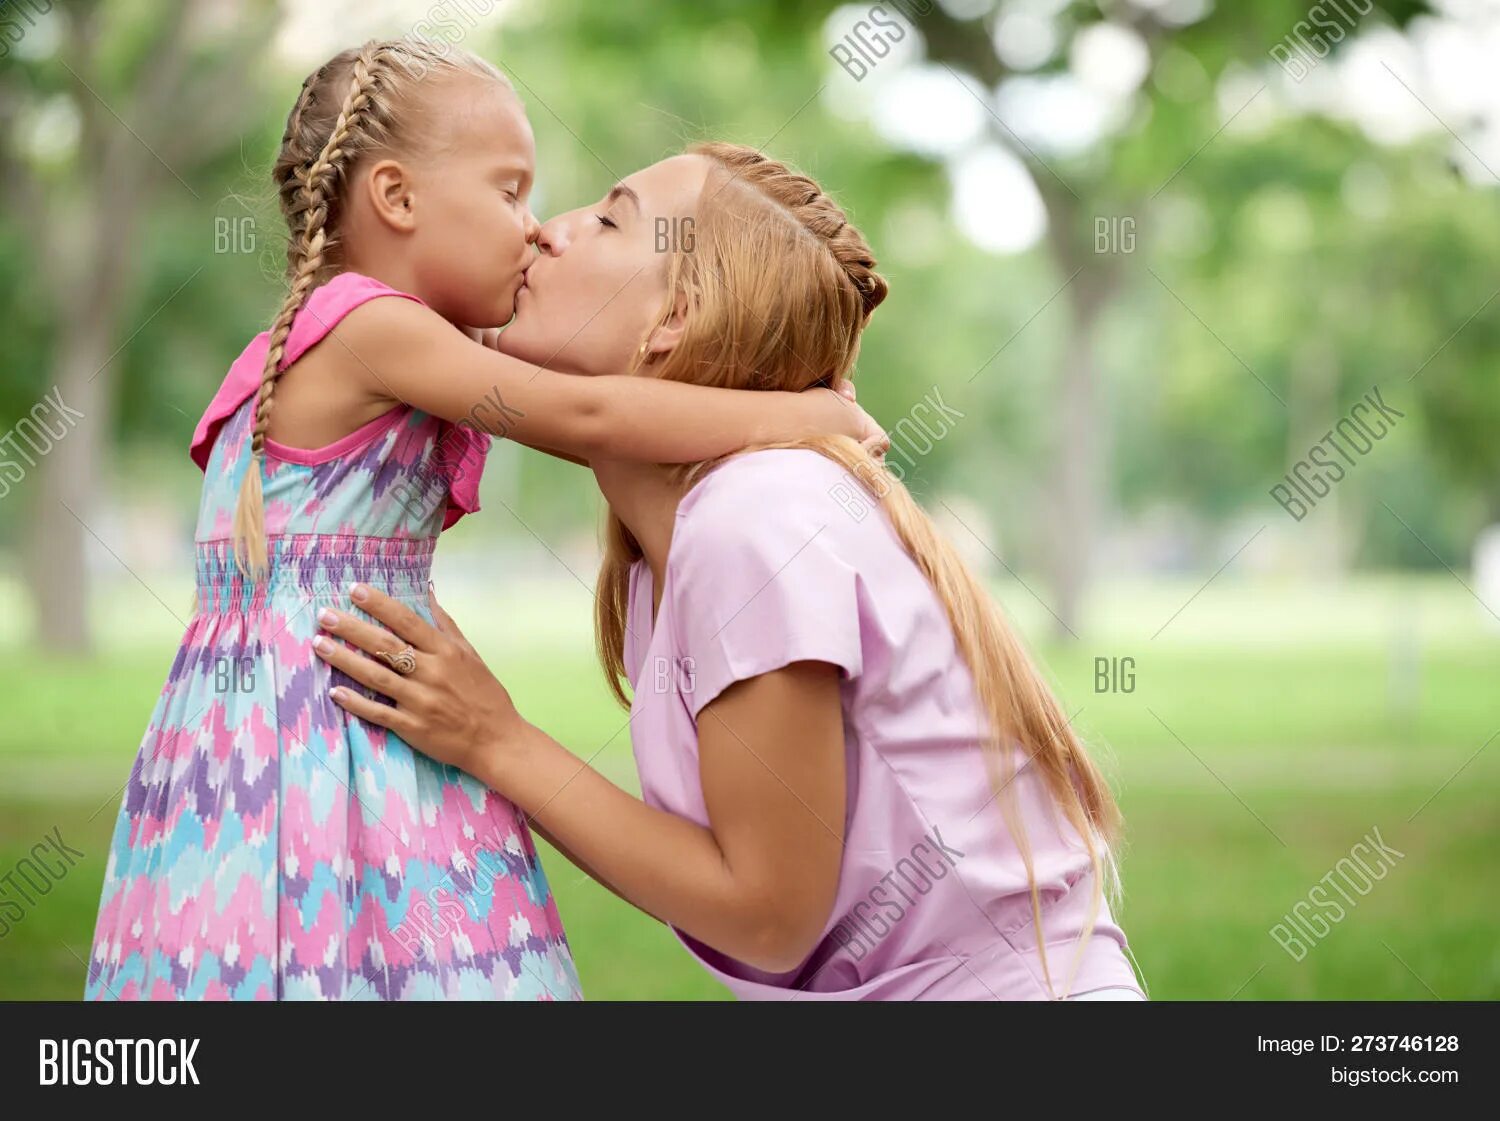 Мама с дочкой поцелуй. Мама целует дочку в губы. Поцелуй девочки с мамой. Мама целует дочку с языком.